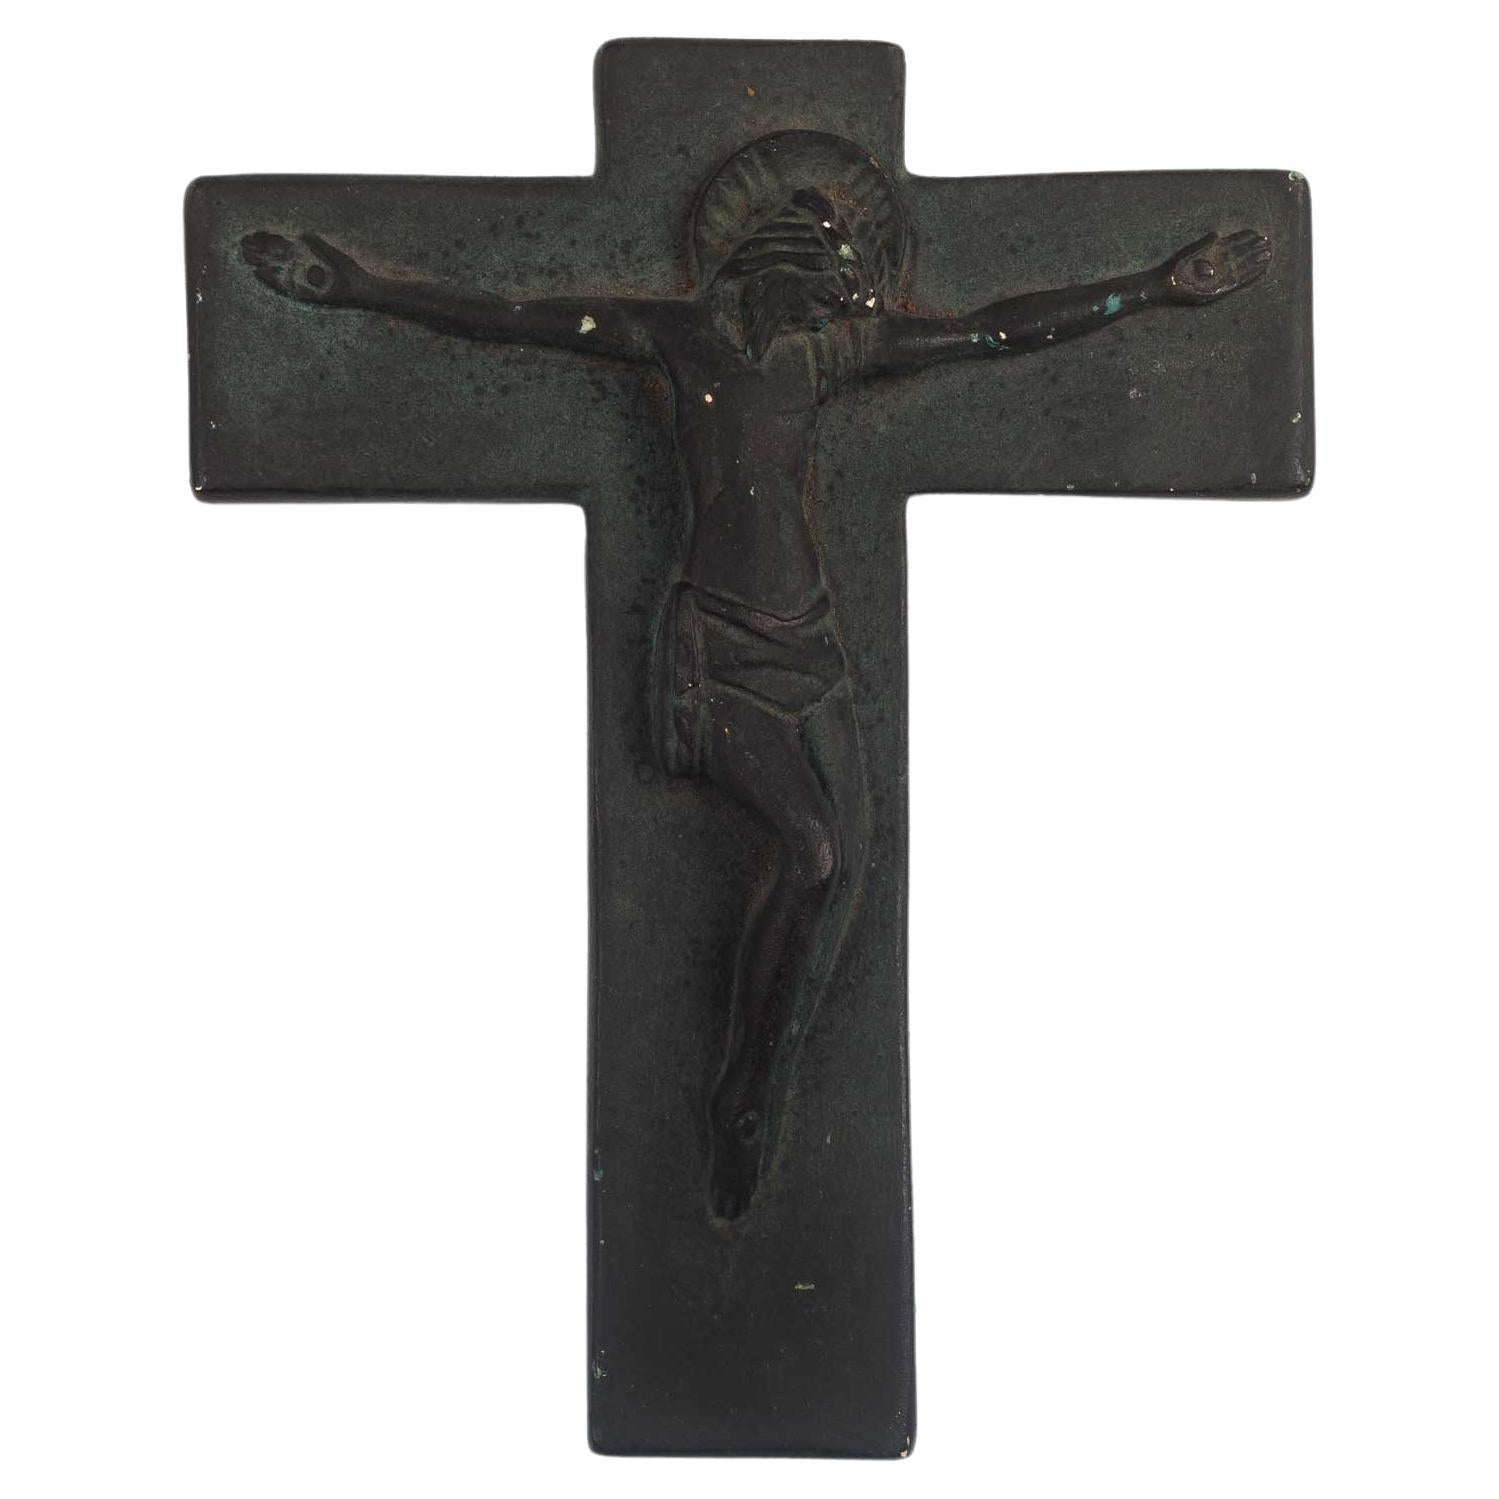 European Ceramic Crucifix in Matte Charcoal, 1960s